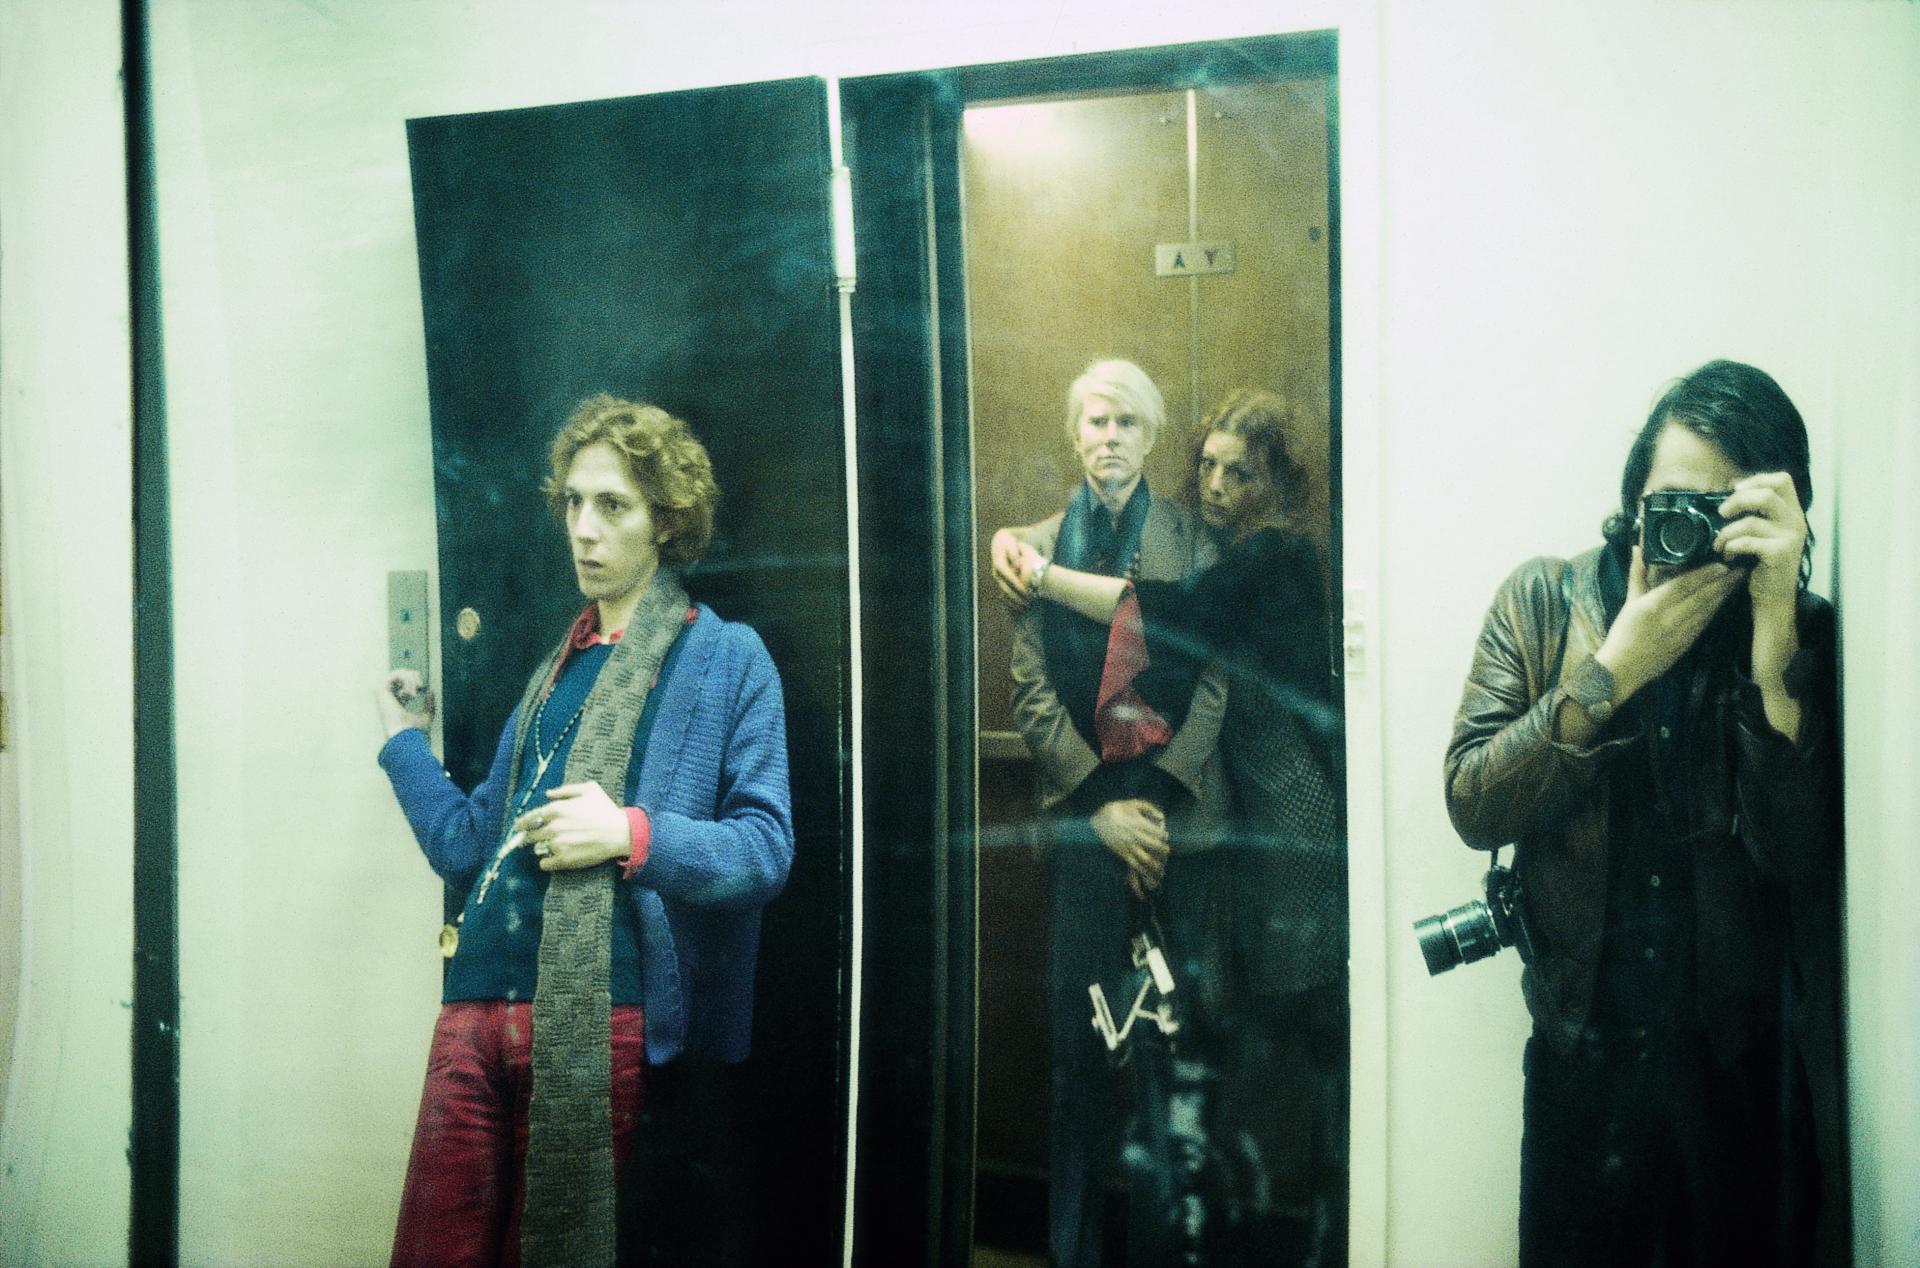 Fotographie von vier Personen durch einen Spiegel. Ein Mann lehnt außen an der Tür eines Aufzugs. Im Aufzug steht Andy Warhol, der von einer Frau umarmt wird. Beide blicken in die Kamera. Rechts vor dem Aufzug steht ein Mann dessen Gesicht von einer Kamera verdeckt ist. 